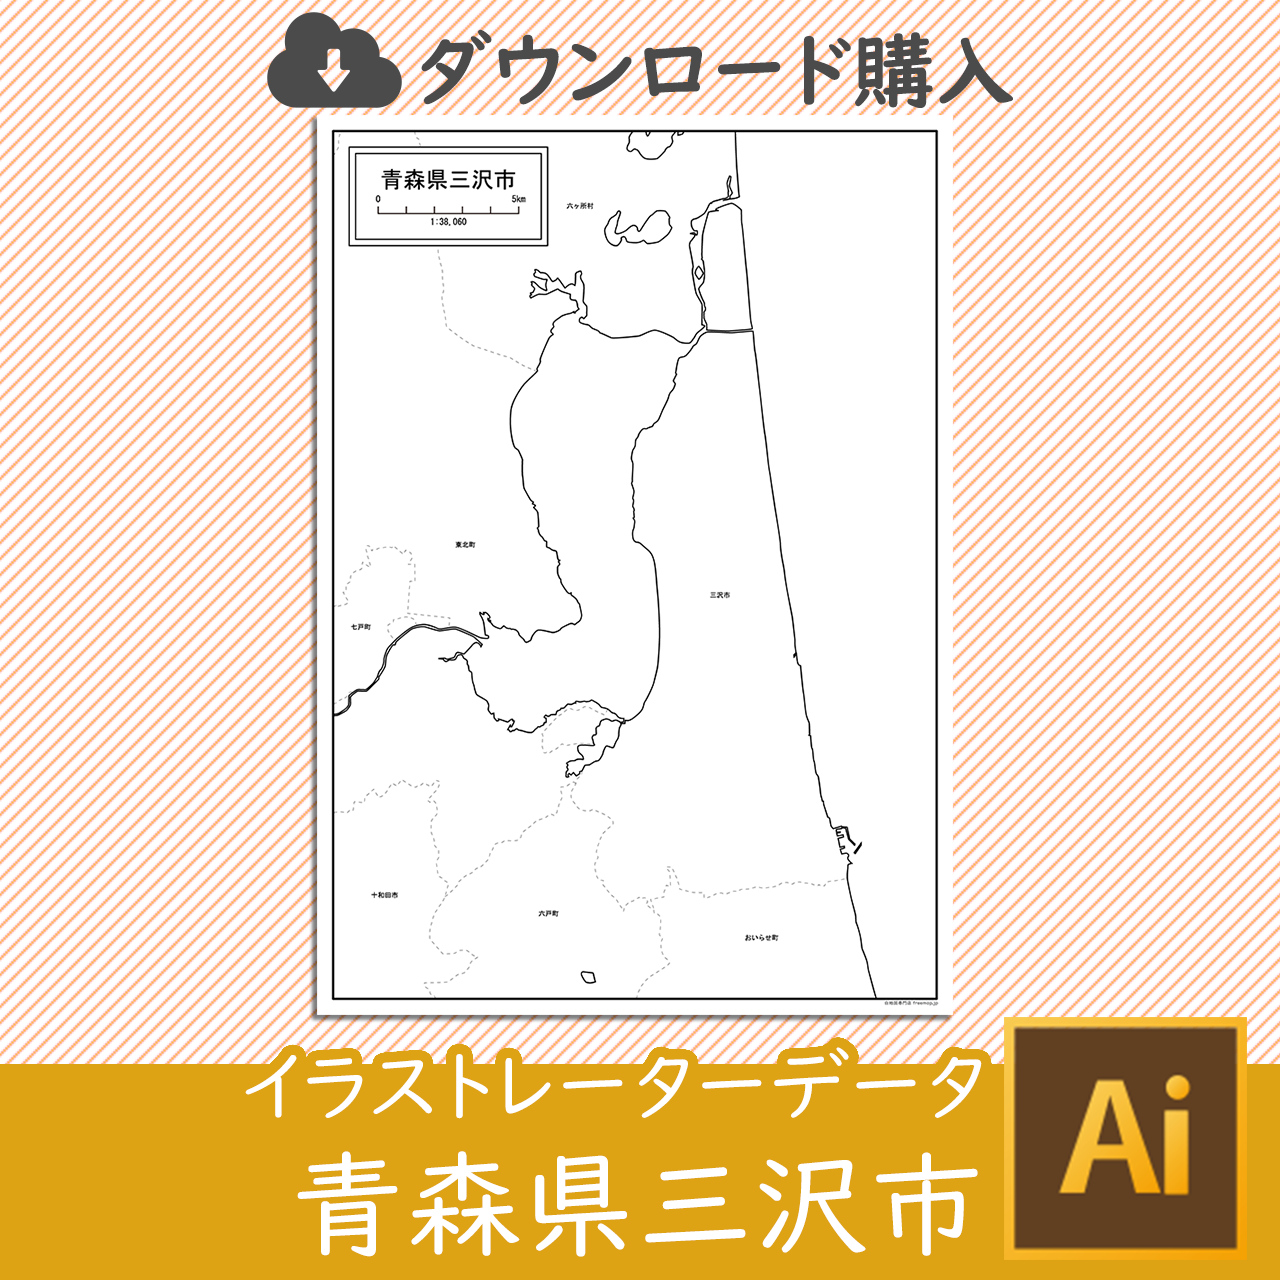 三沢市のaiデータのサムネイル画像